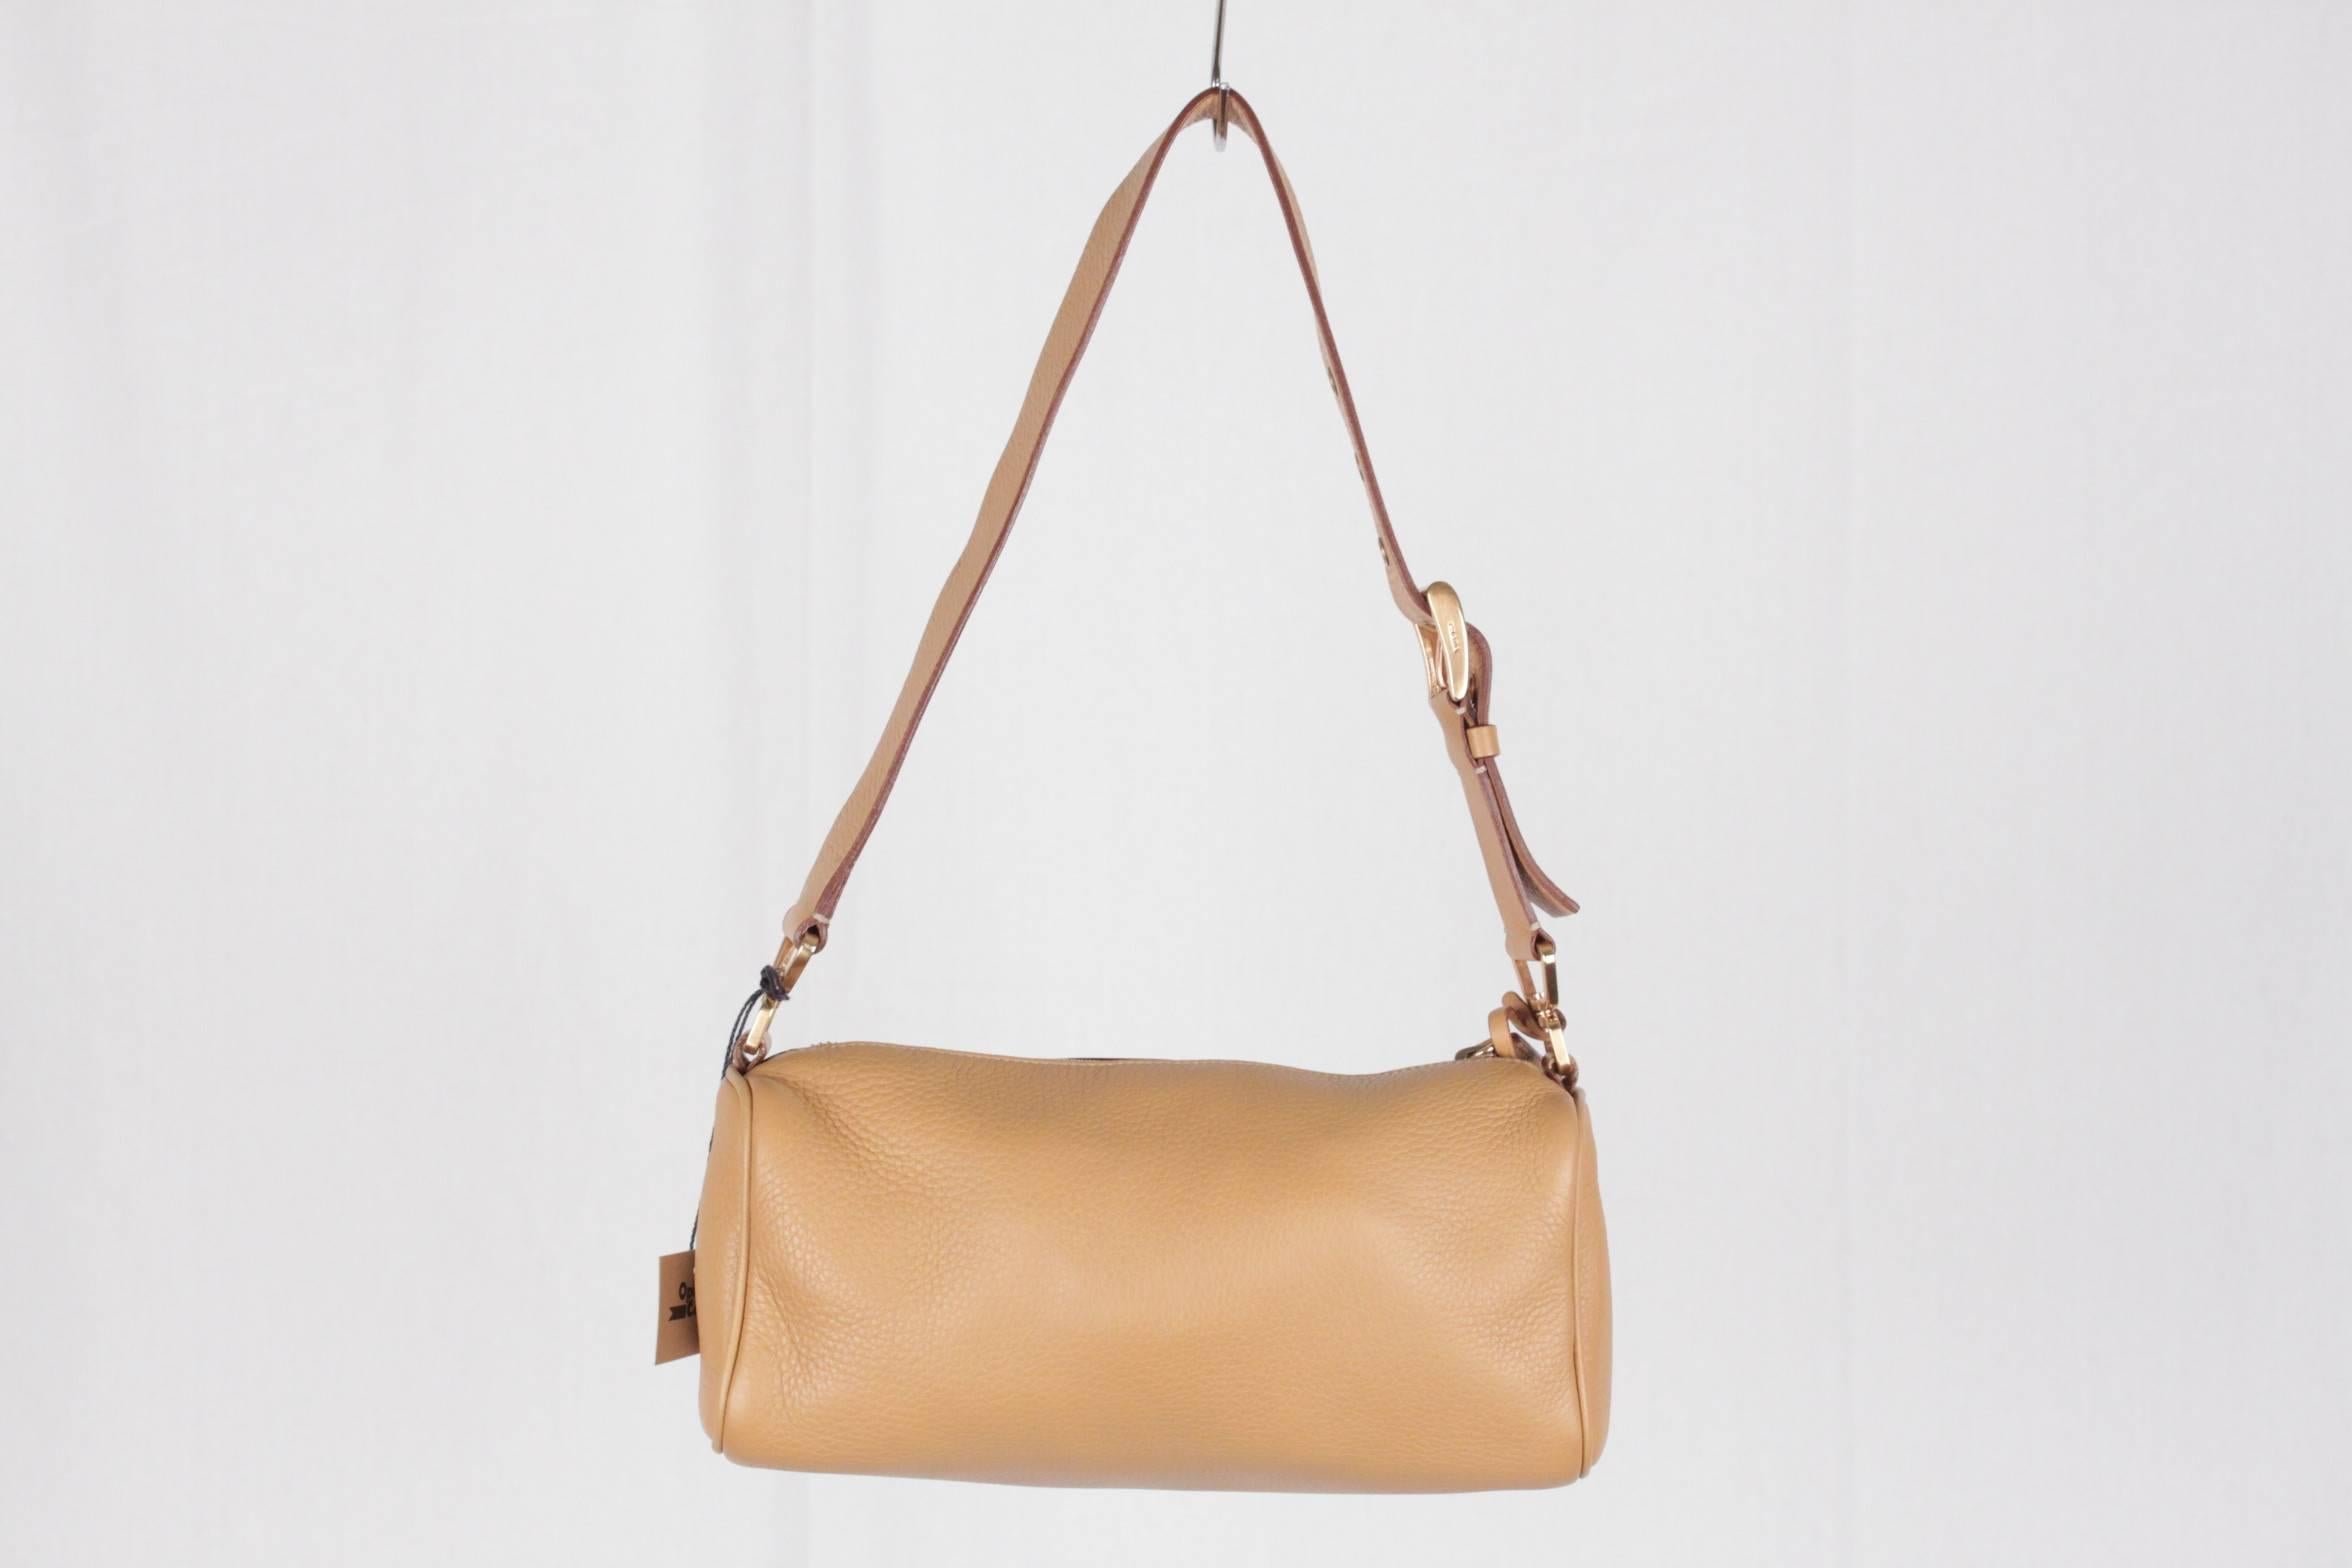 Brown PRADA Tan Leather SHOULDER BAG Handbag w/ PADLOCK